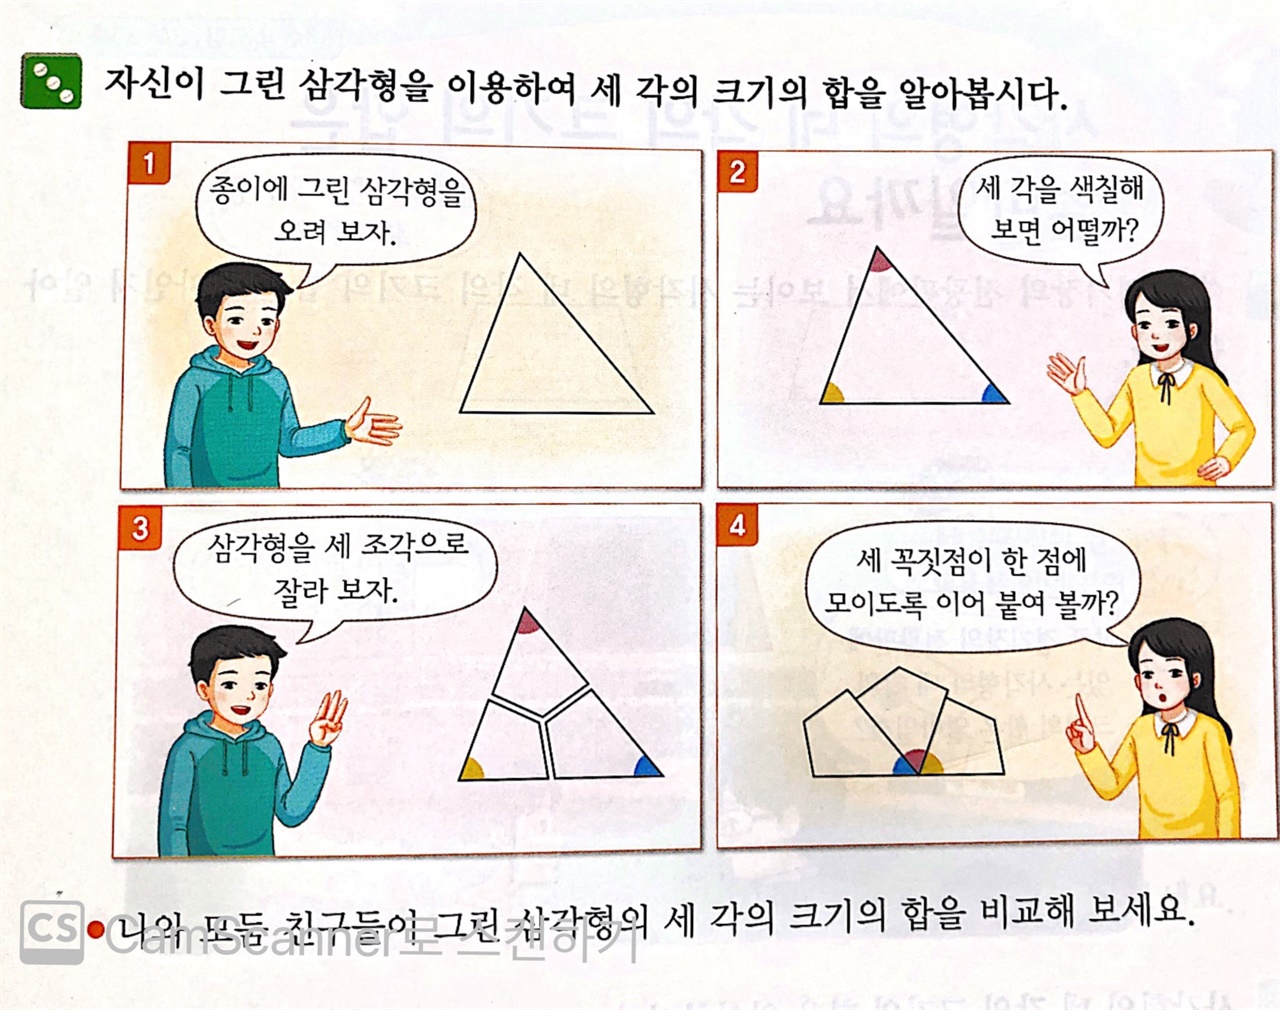 초4 수학 교과서에  나오는 삼각형의 정의